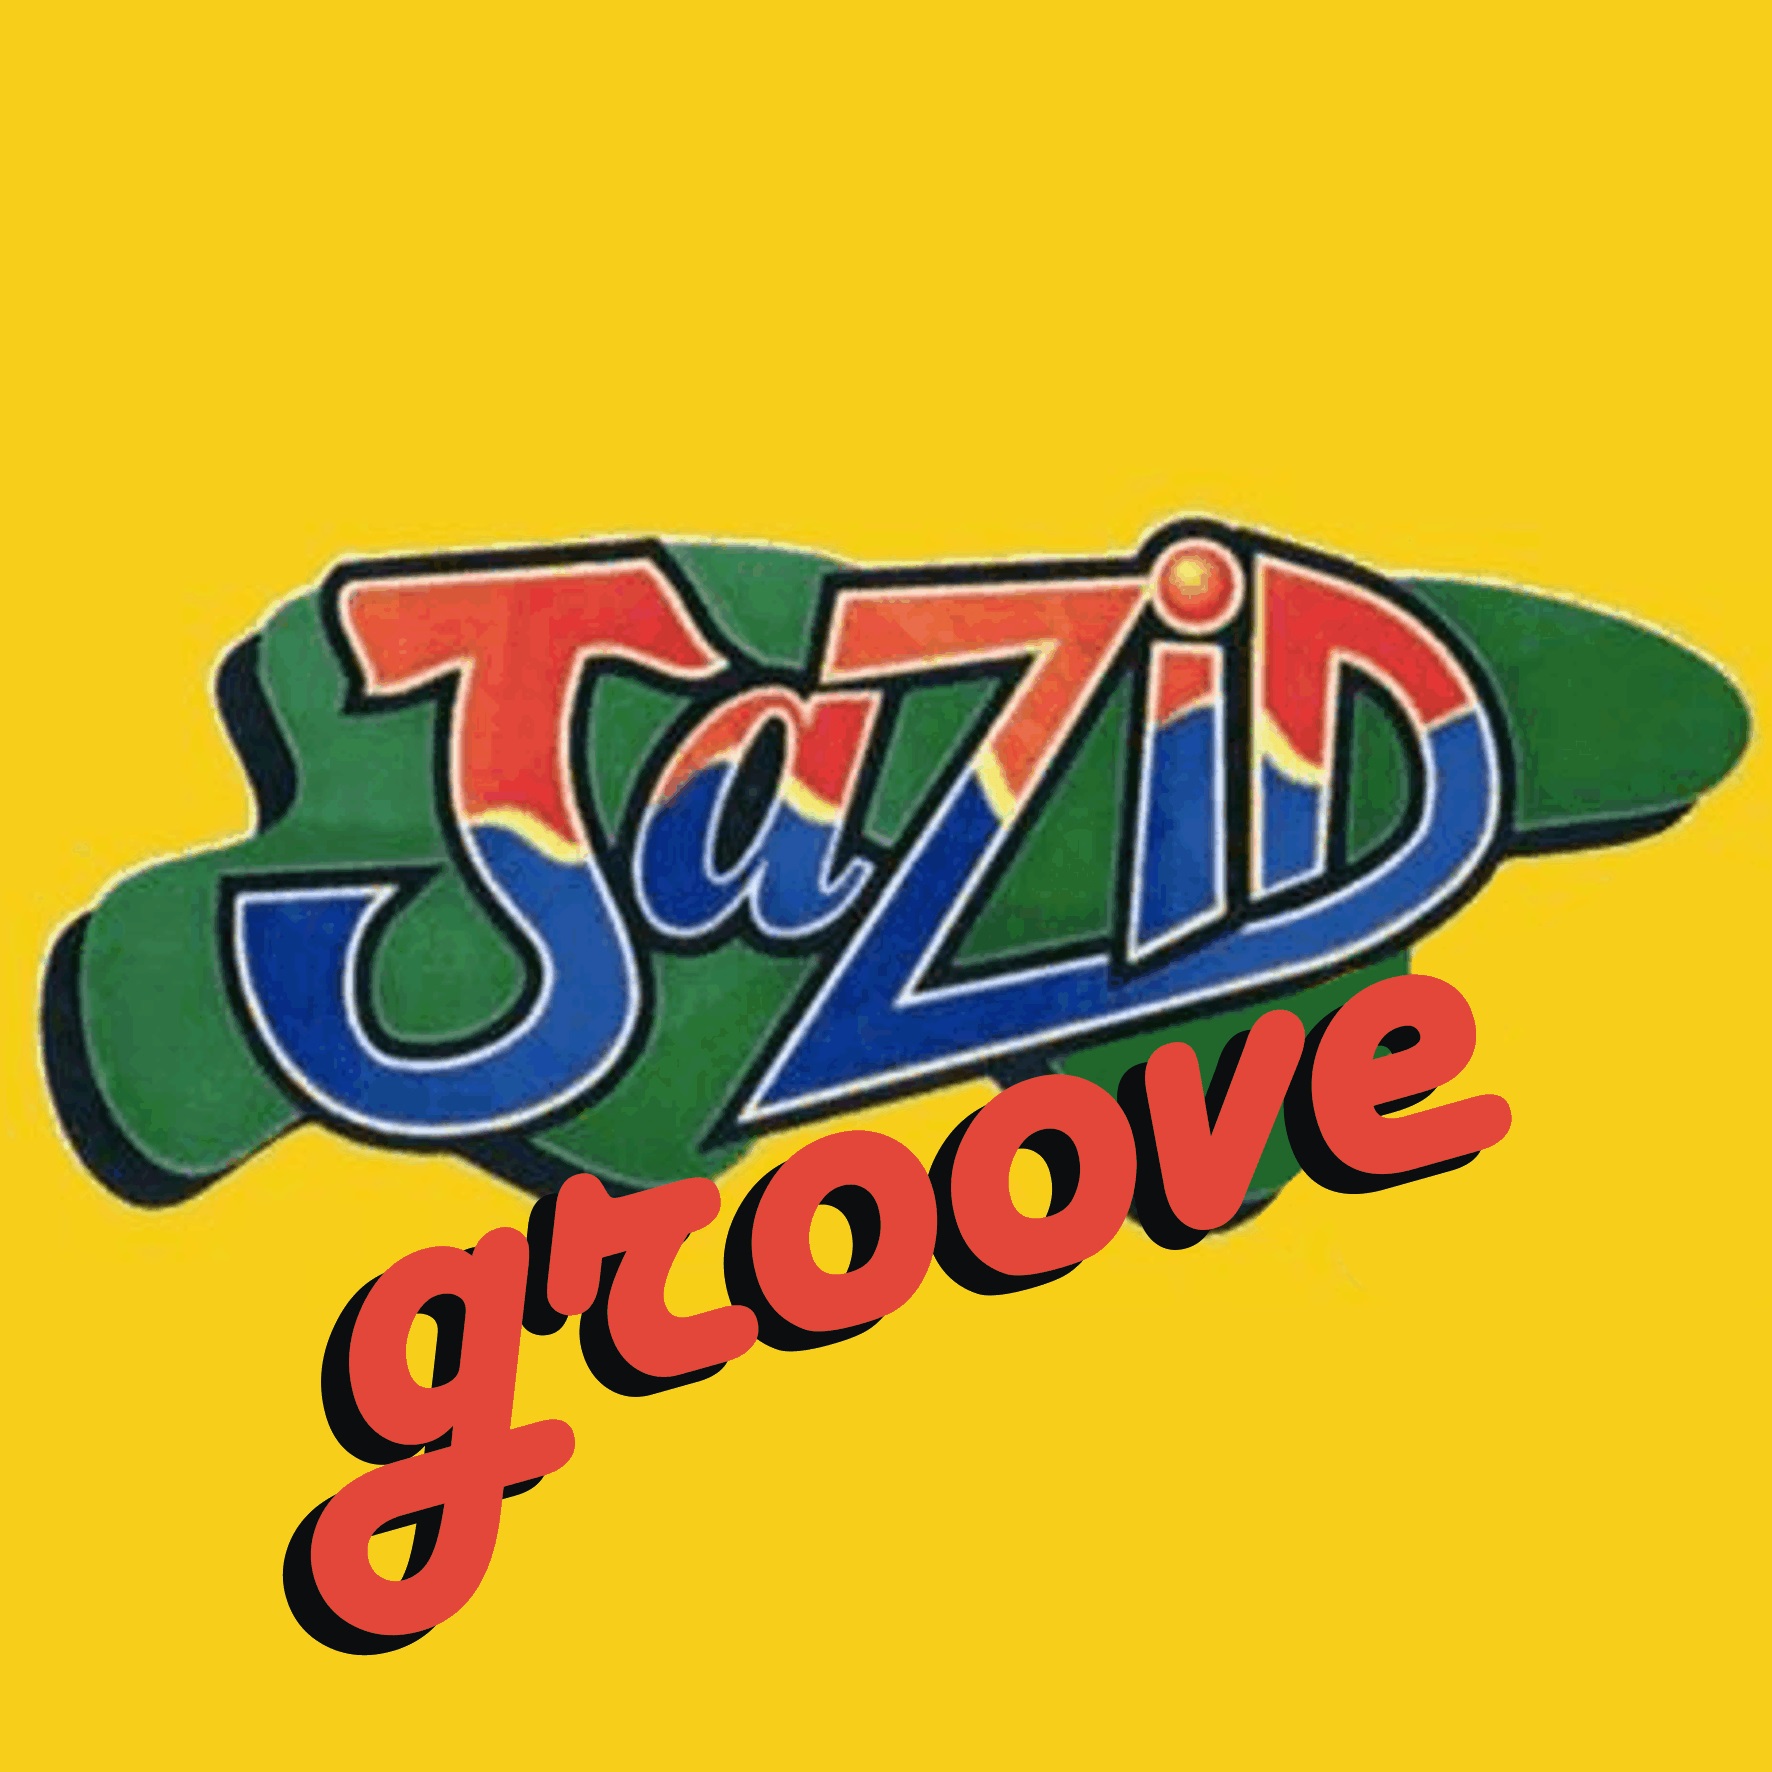 Jazid Groove 65